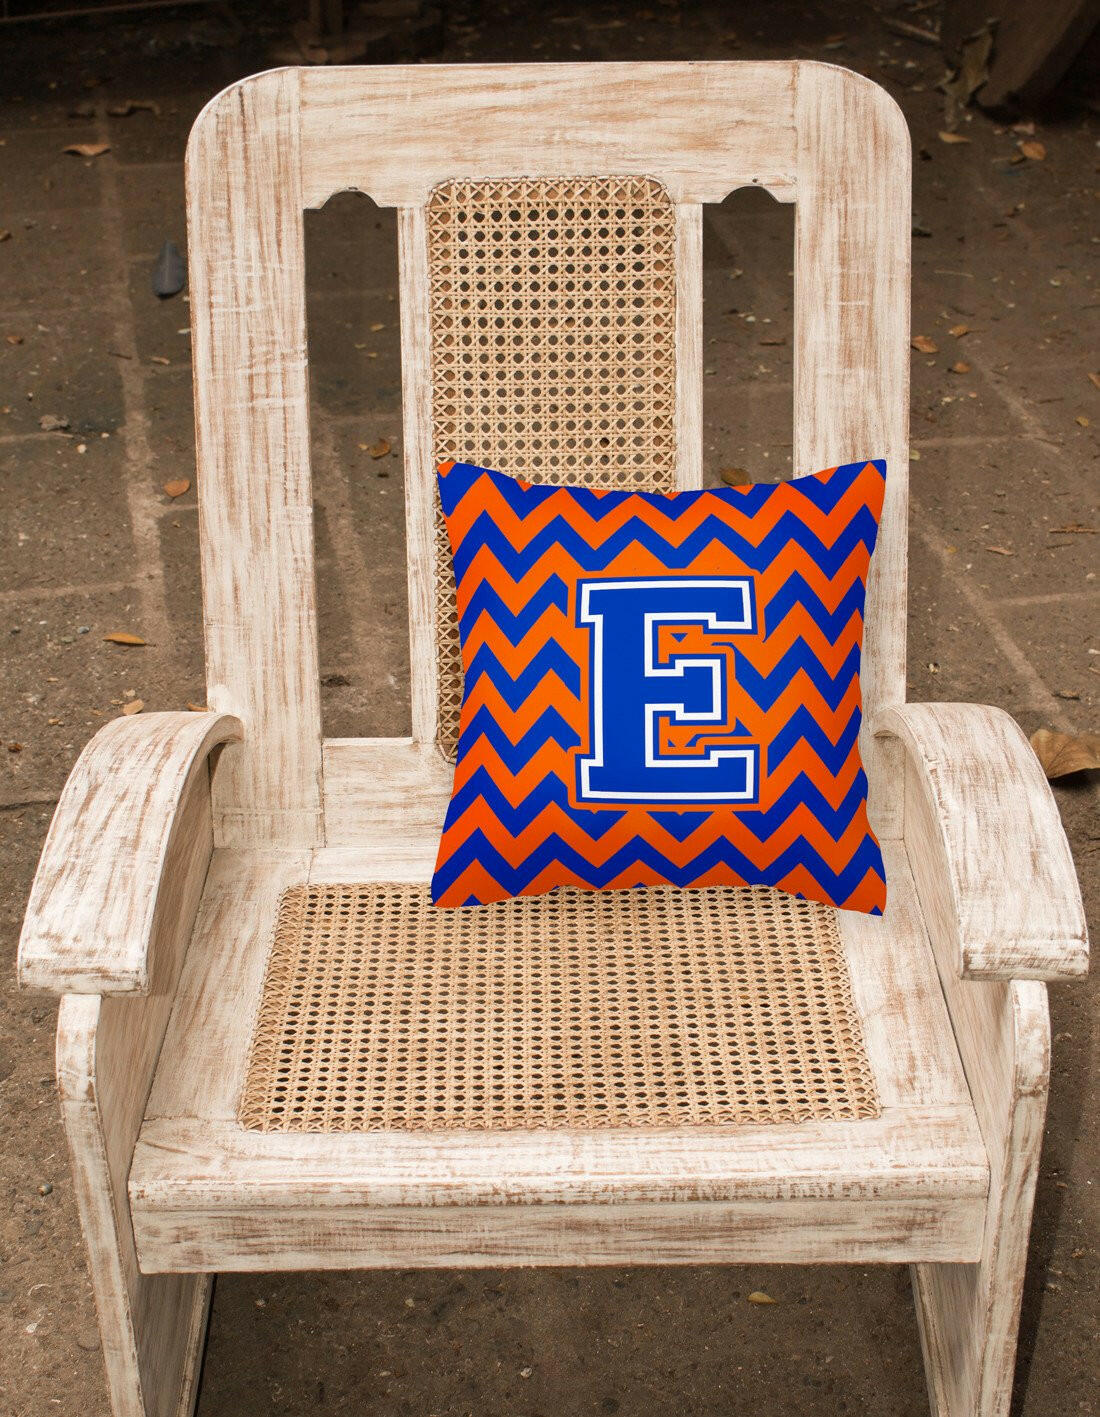 Letter E Chevron Orange and Blue Fabric Decorative Pillow CJ1044-EPW1414 - the-store.com